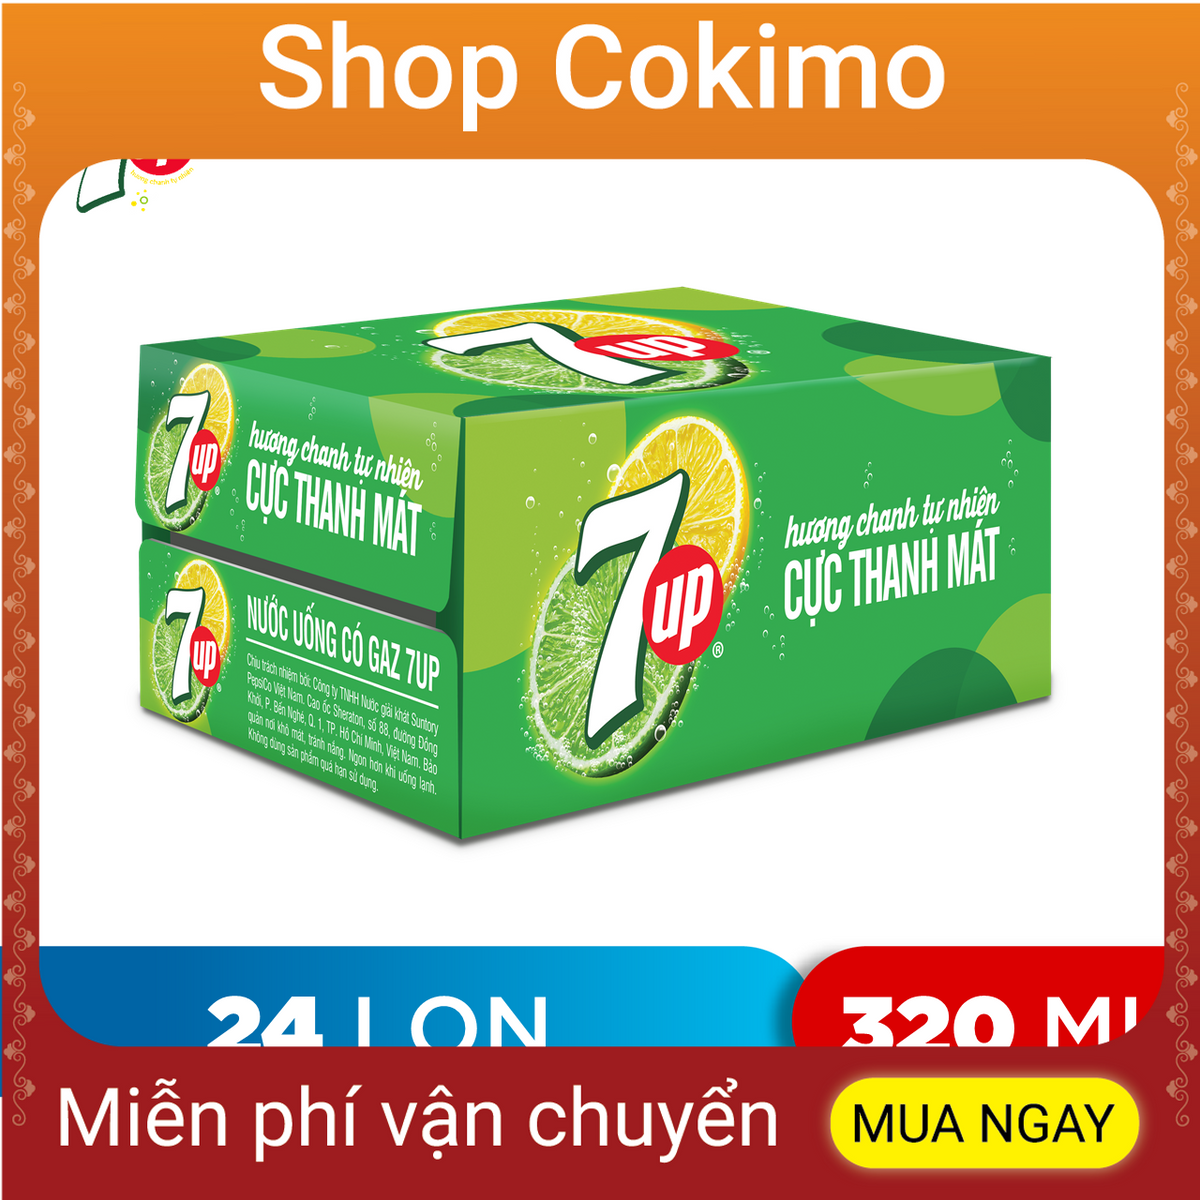 Thùng 24 Lon Nước Ngọt Có Gaz 7Up (320ml/lon) DTK98578829 - Shop Cokimo - 24 cans of freshwater with gaz 7up (320ml / can)